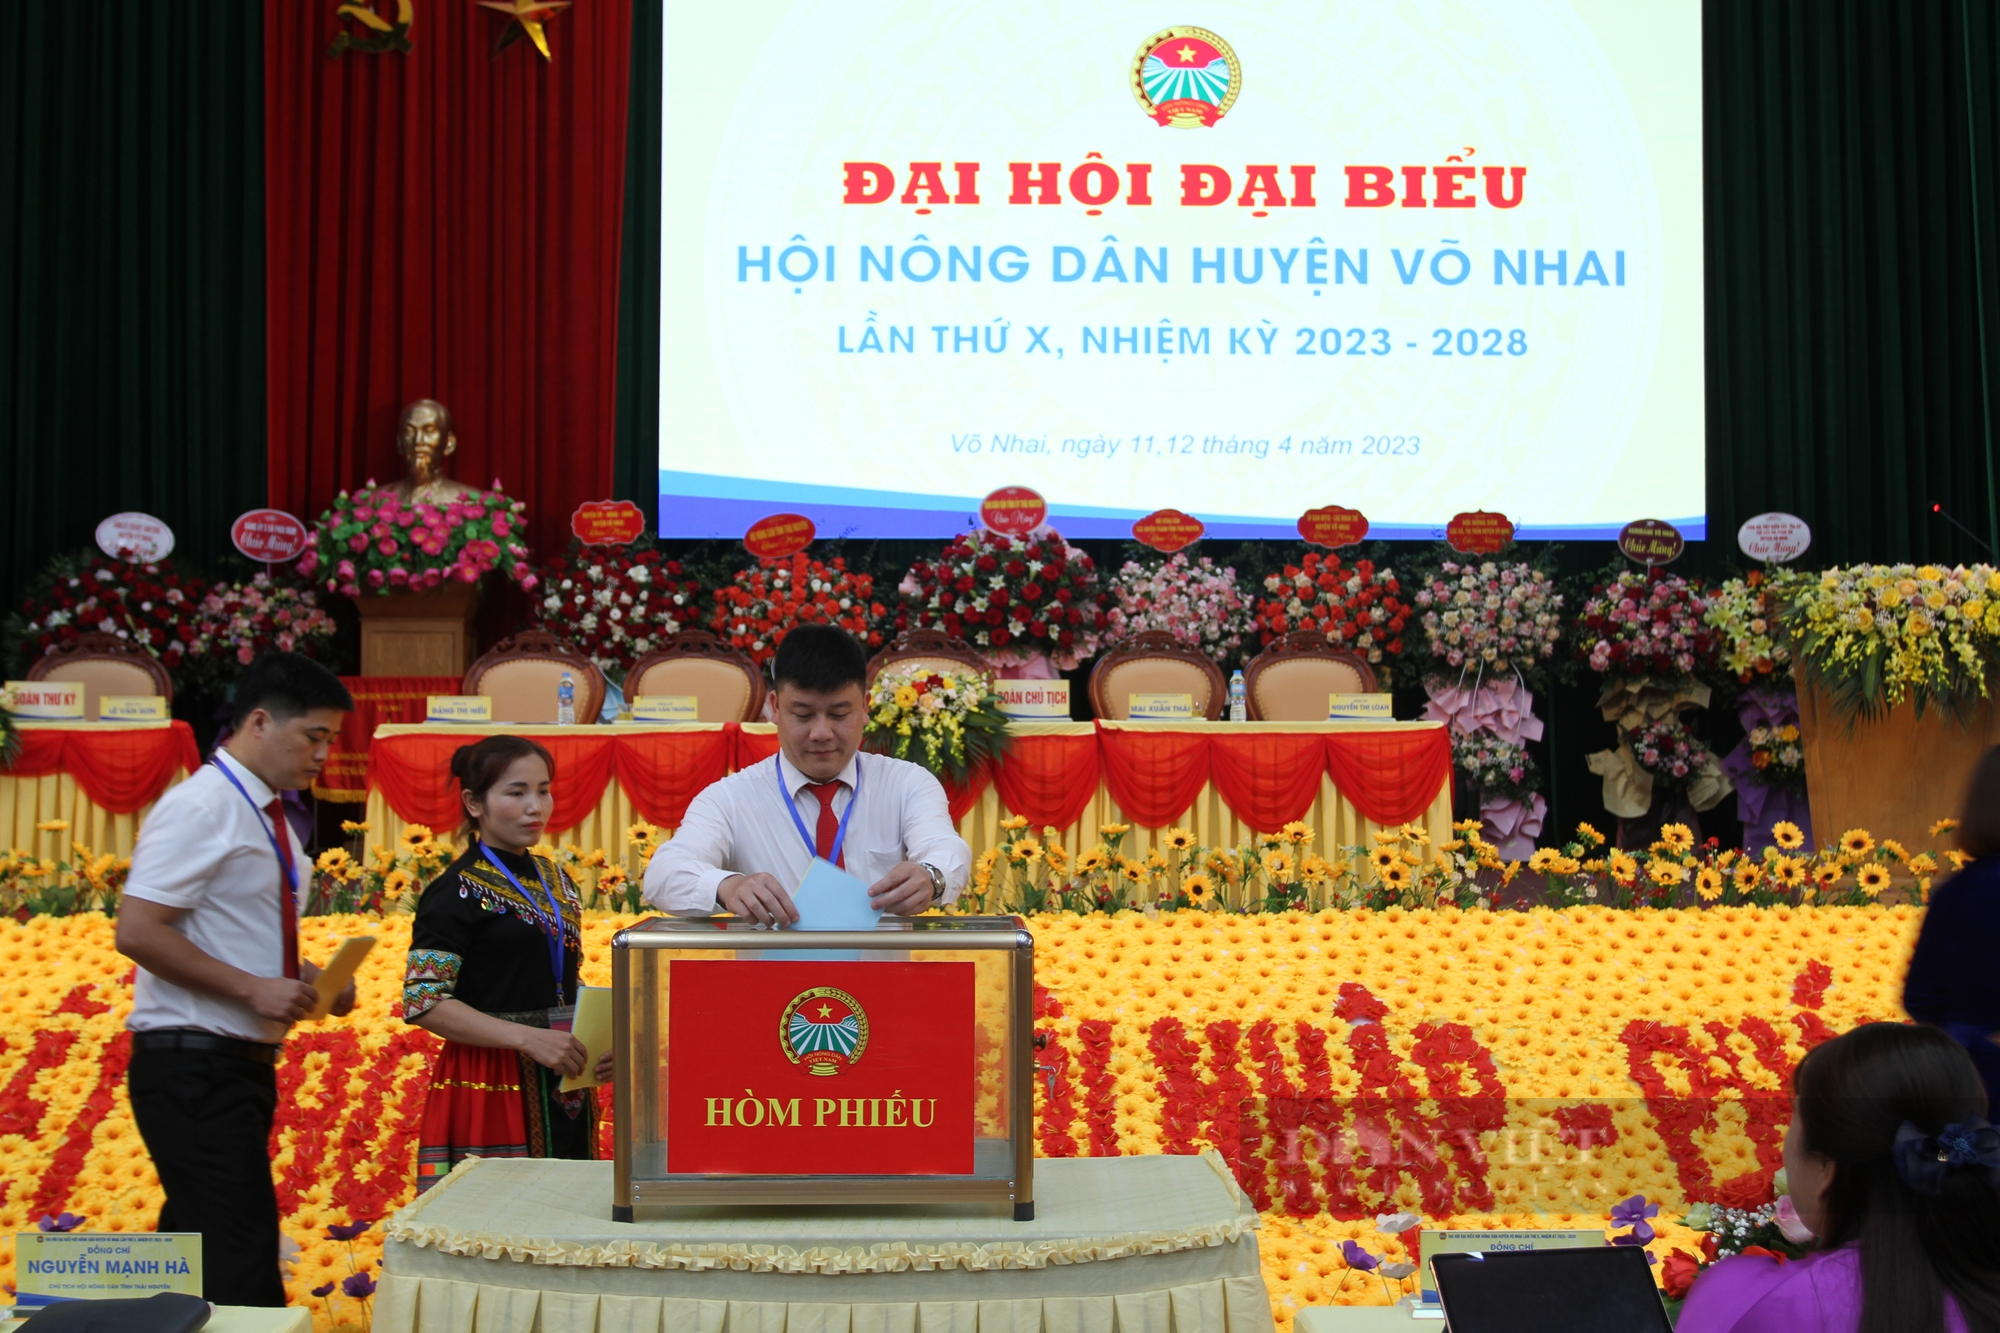 Khai mạc Đại hội đại biểu HND huyện Võ Nhai lần thứ X, bà Triệu Thị Nhinh tái đắc cử chức danh Chủ tịch - Ảnh 5.